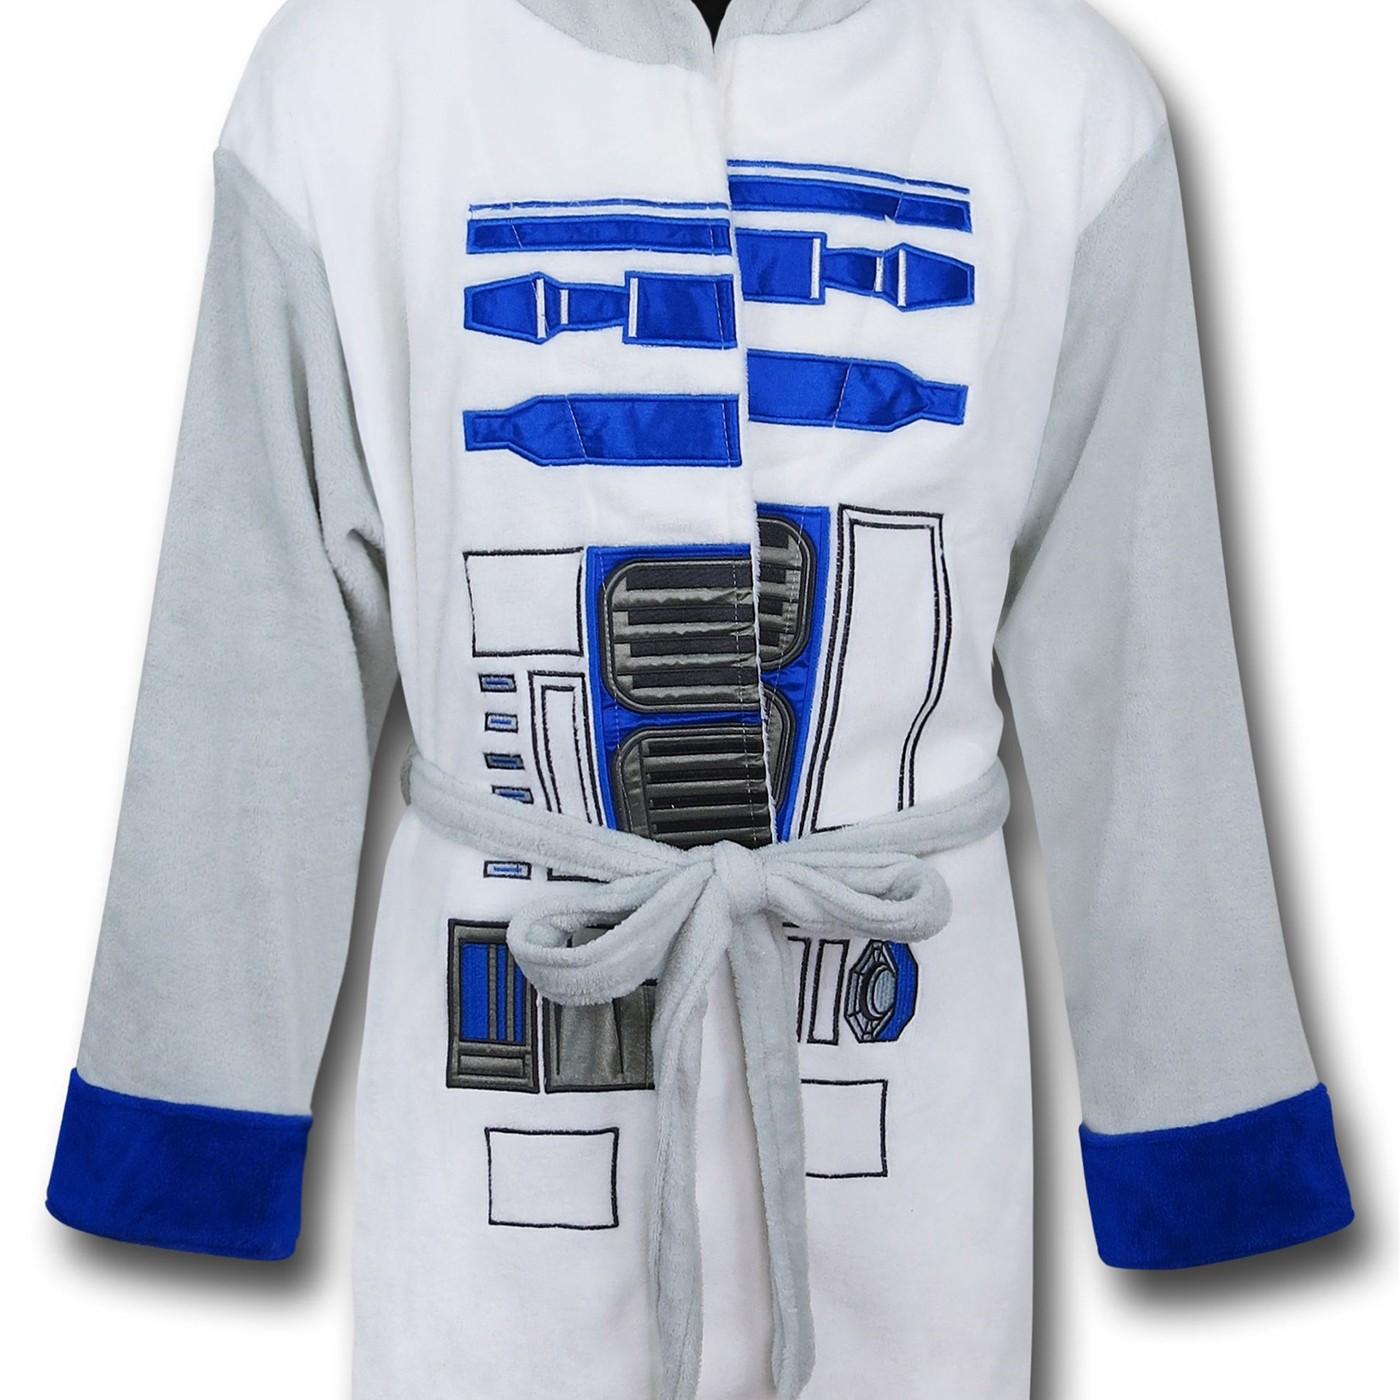 Star Wars R2D2 Hooded Fleece Robe